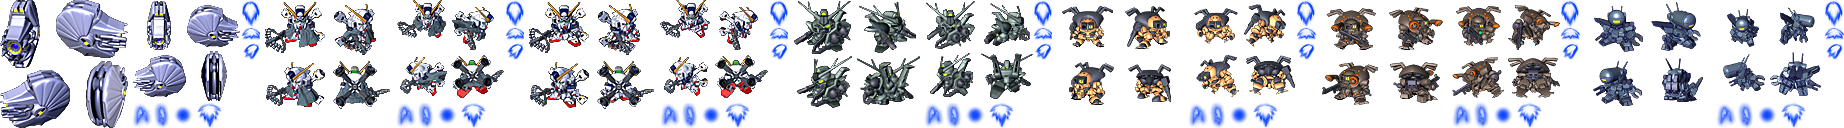 Crossbone Gundam - Skull Heart Units